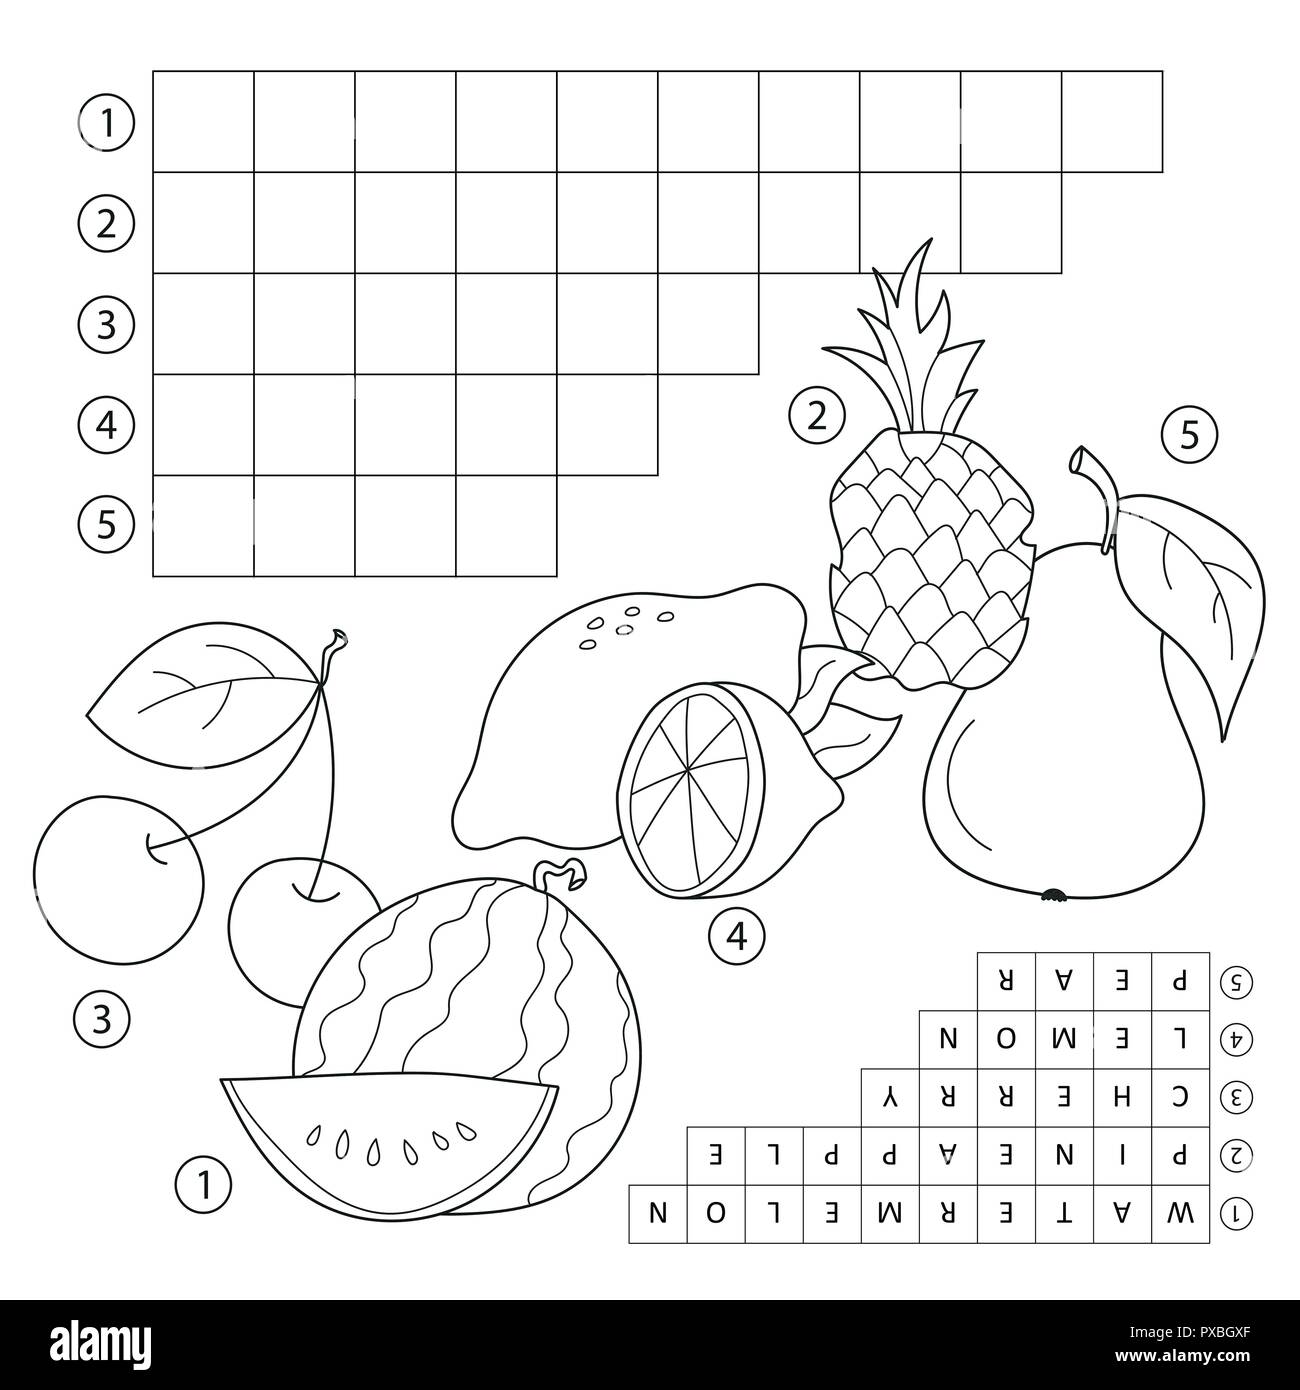 Jeu de mots croisés avec des fruits. Page de l'éducation pour les enfants -anglais Illustration de Vecteur